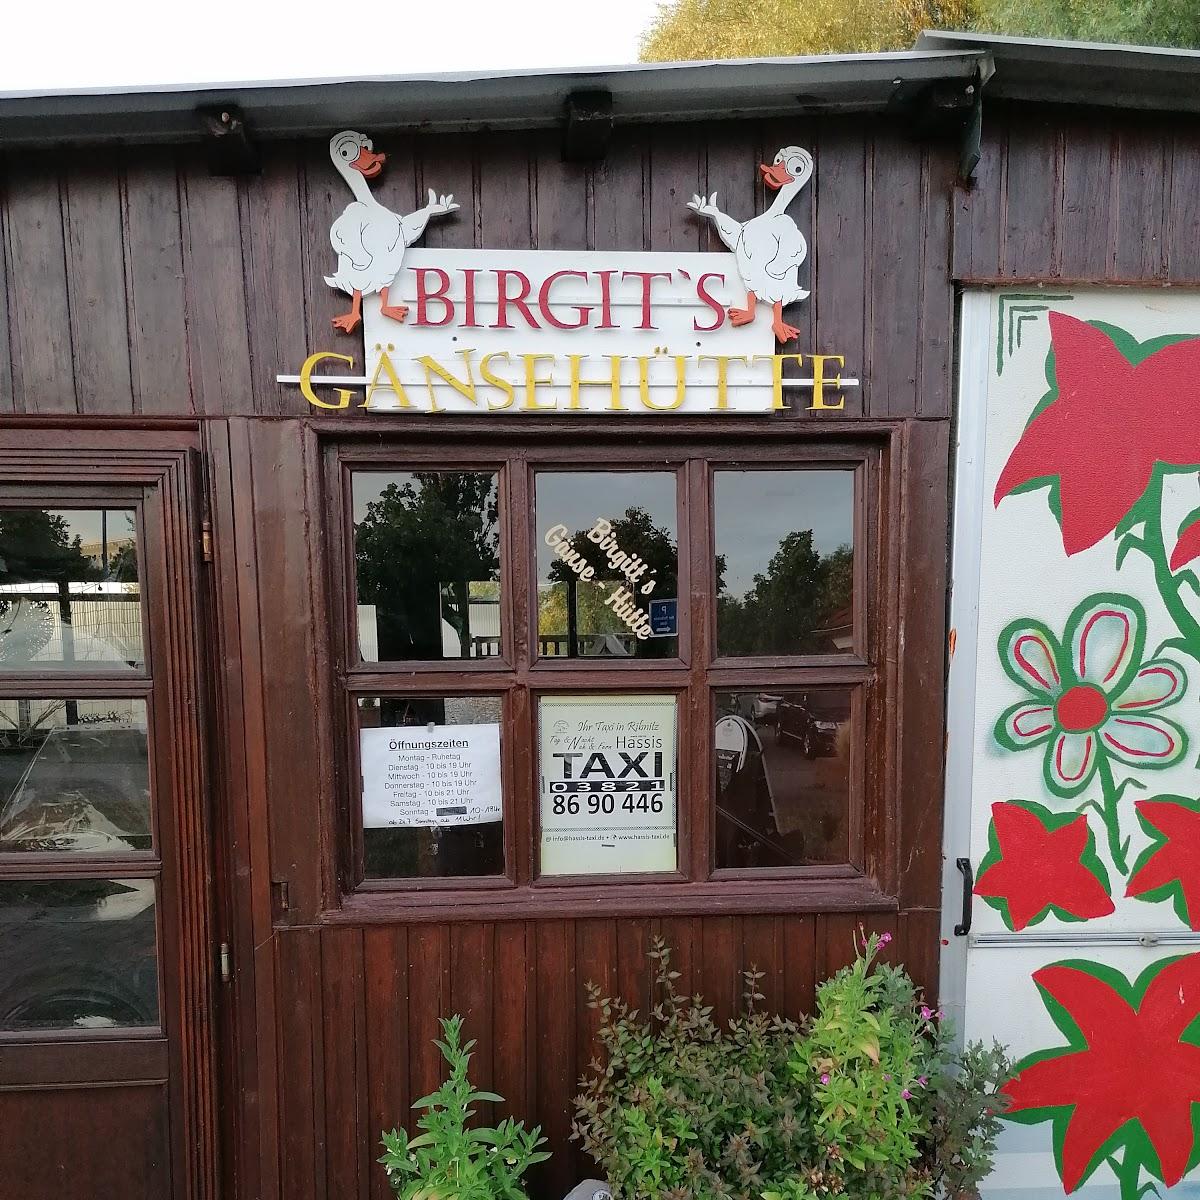 Restaurant "Birgits Gänsehütte" in Ribnitz-Damgarten